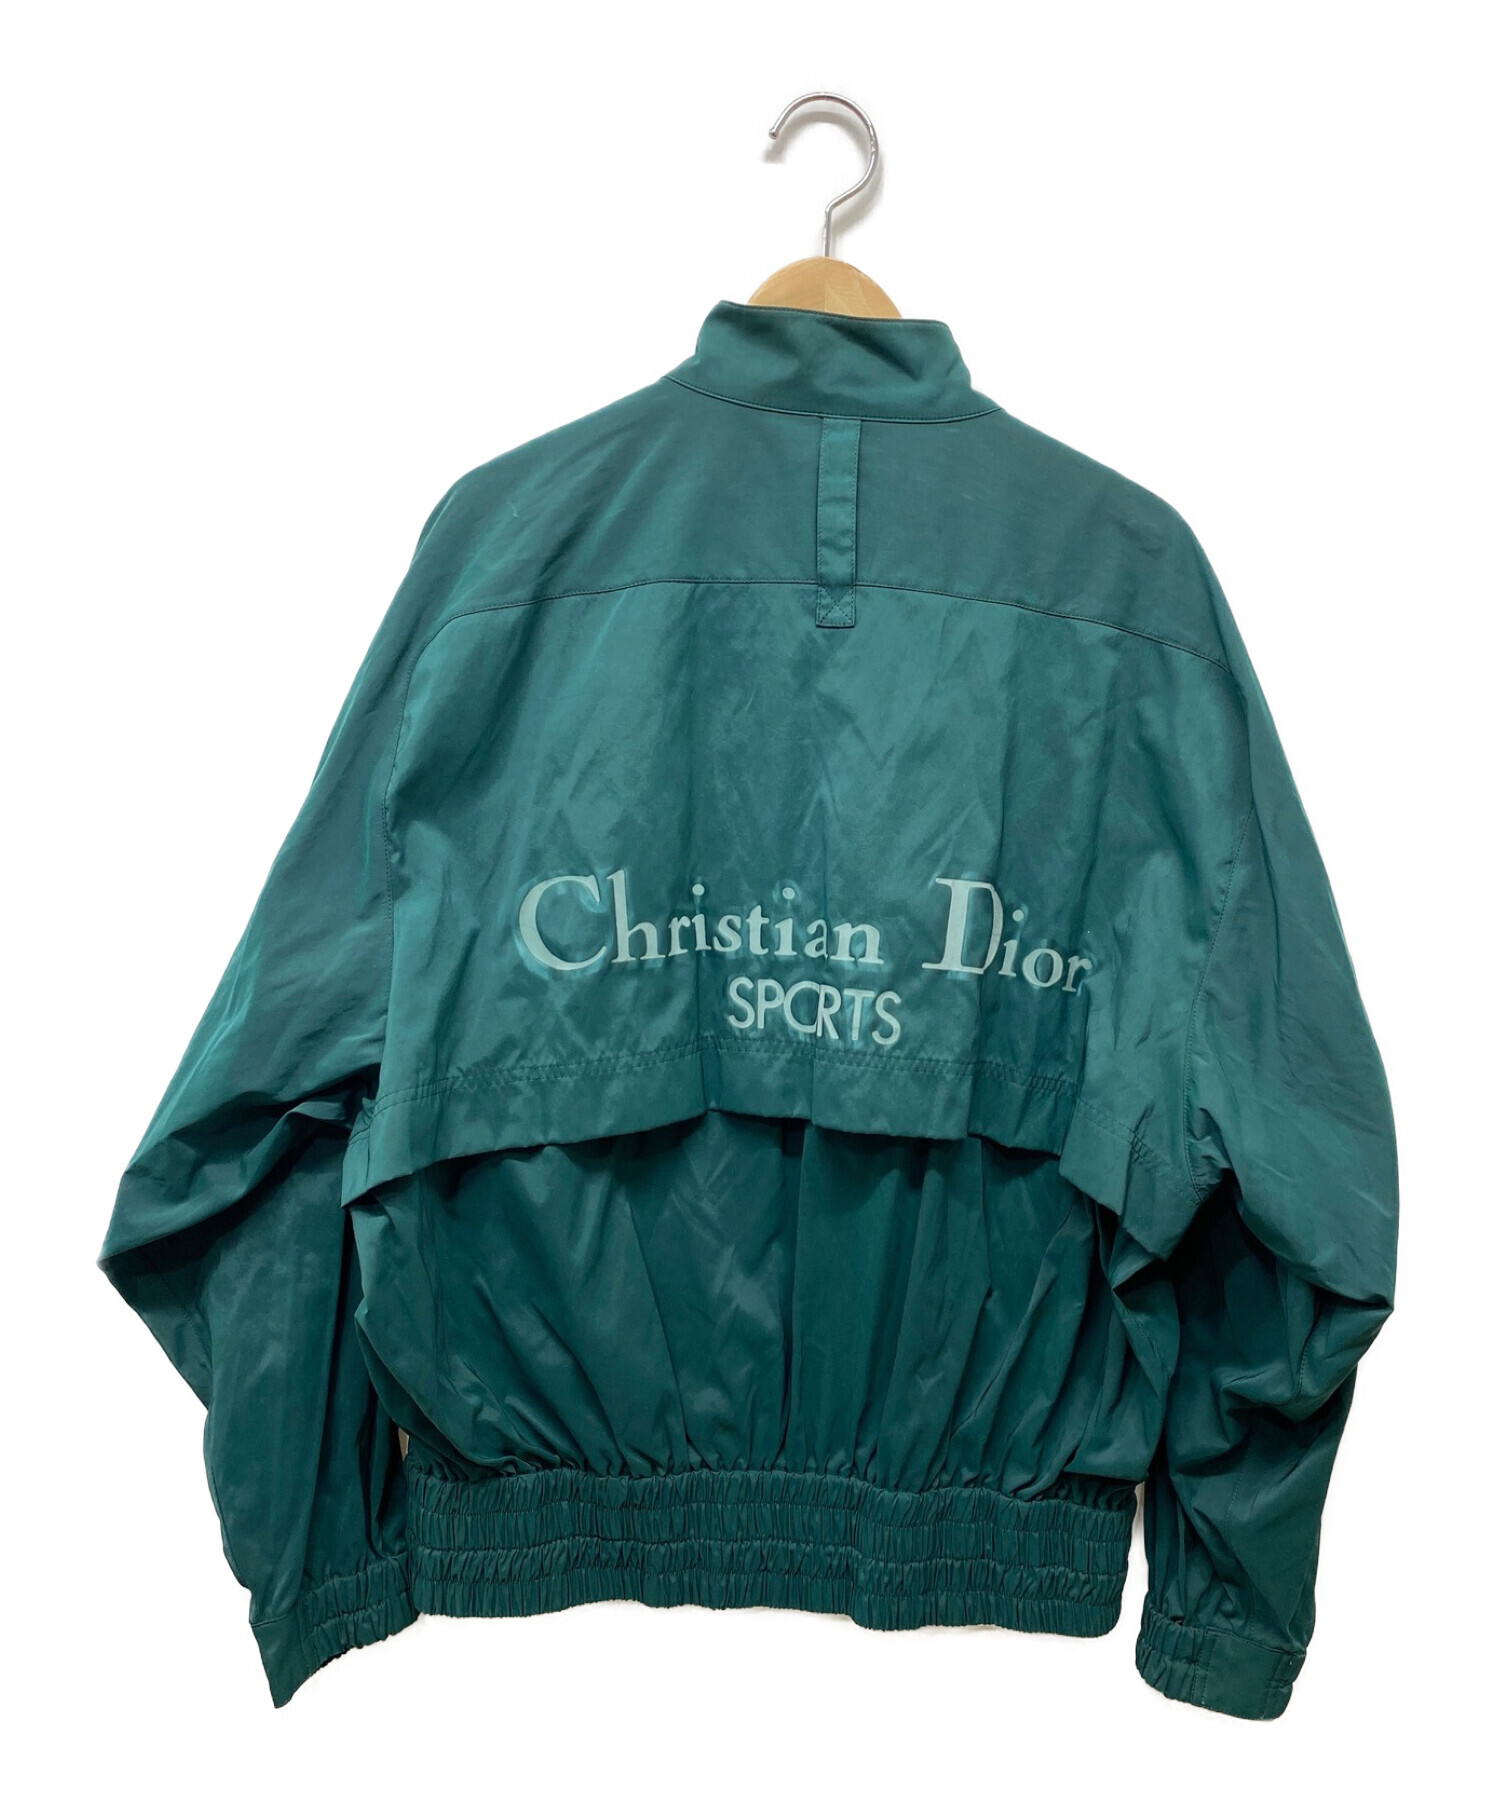 Christian Dior Sports (クリスチャンディオールスポーツ) バックロゴオールドナイロンジャケット グリーン サイズ:S